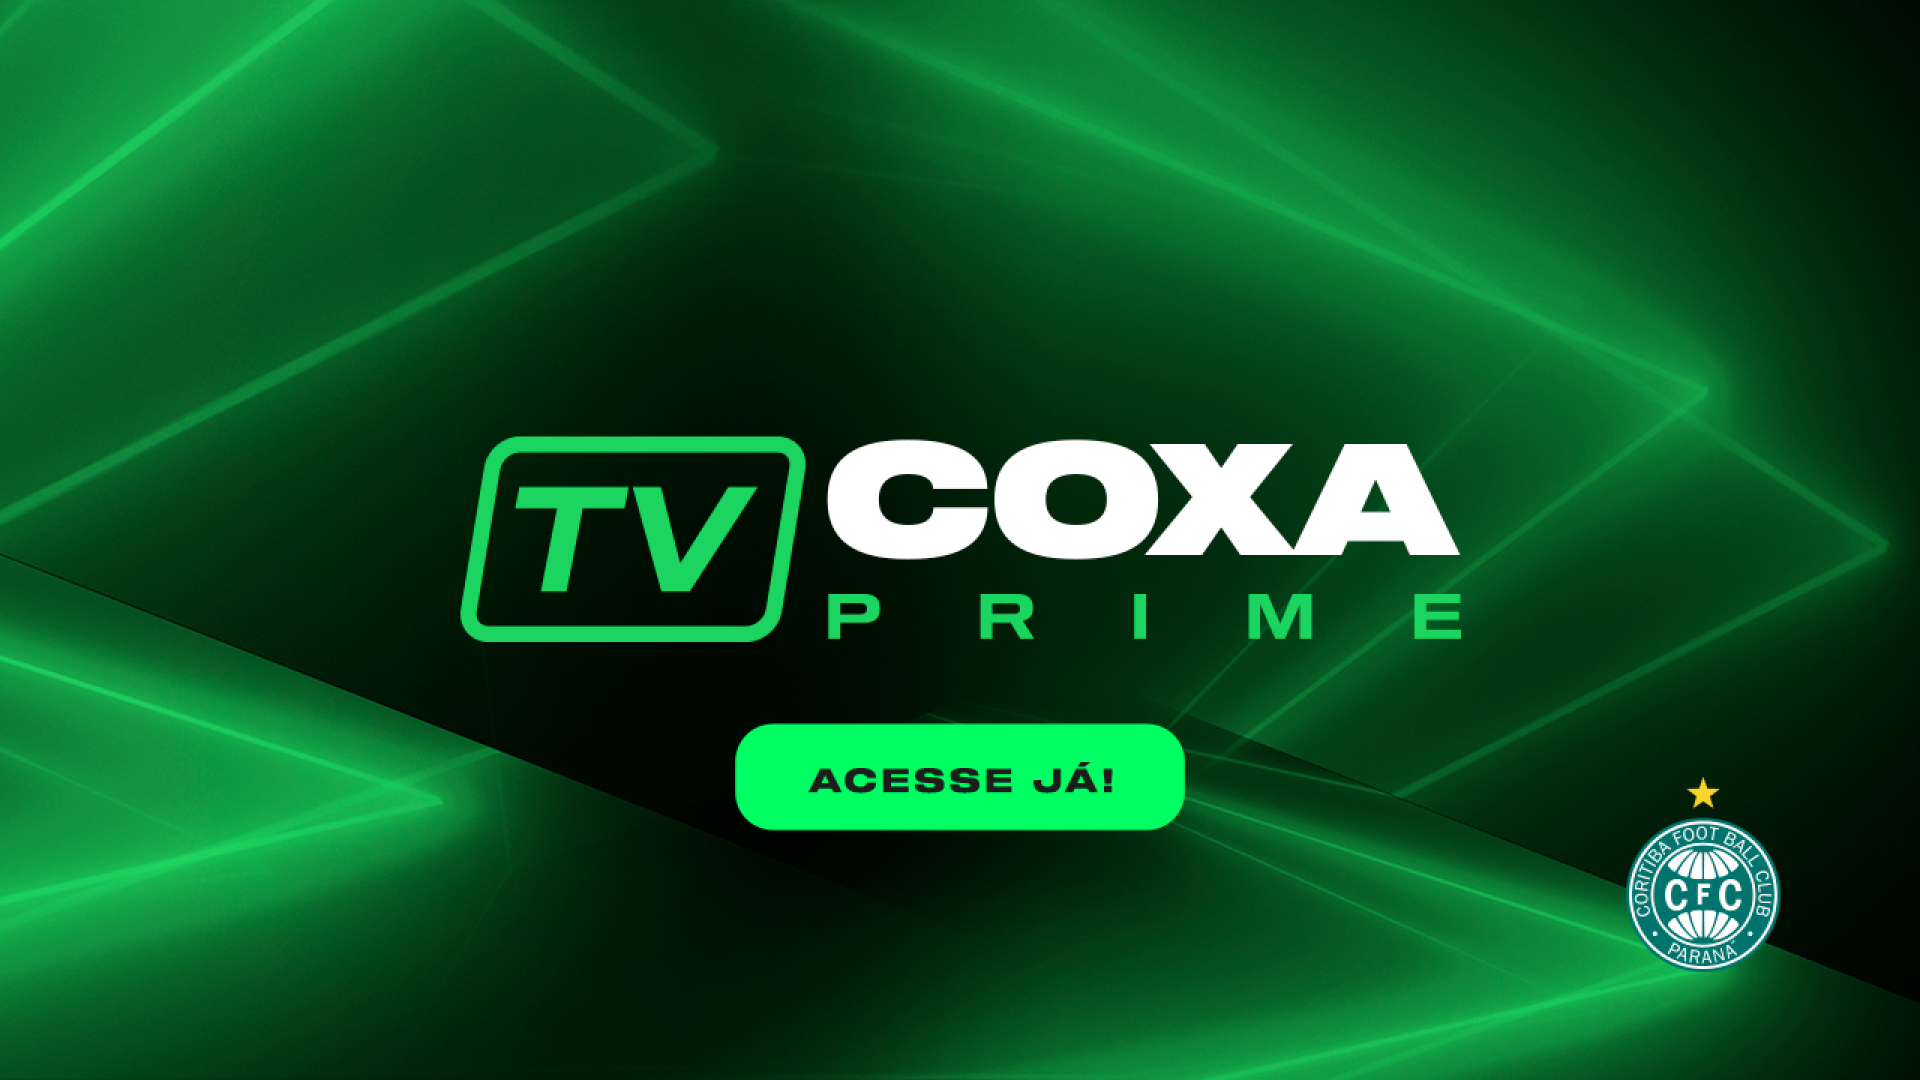 Assine agora a TV Coxa Prime!